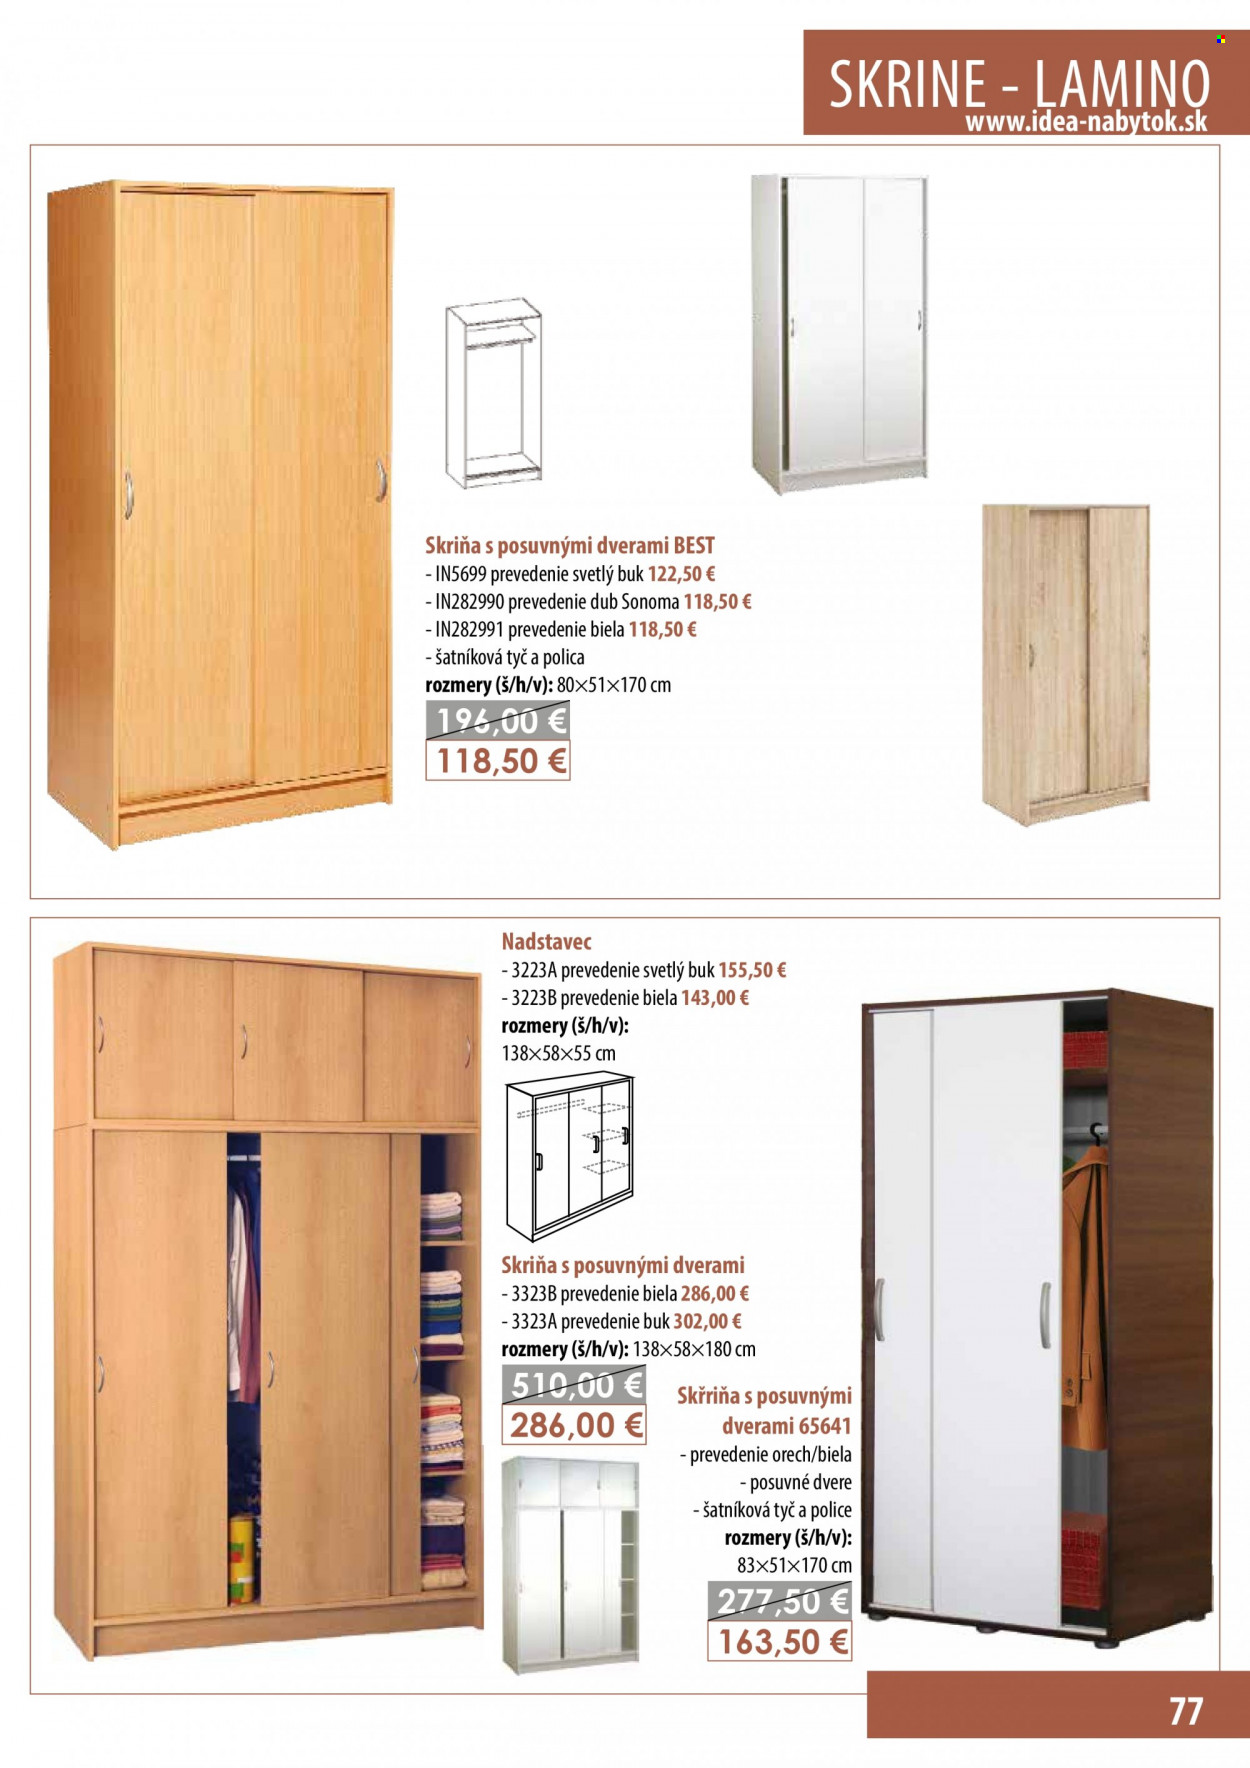 thumbnail - Leták IDEA nábytok - Produkty v akcii - skriňa s posuvnými dverami, skriňa, nadstavec. Strana 77.